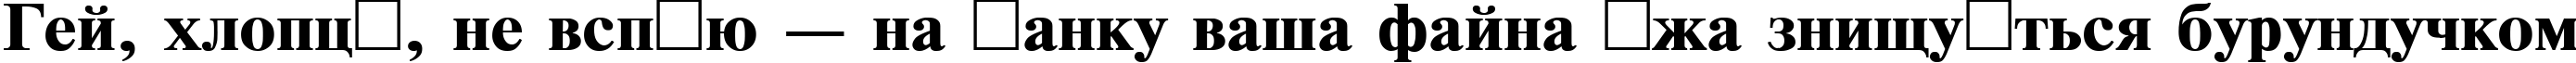 Пример написания шрифтом TimesET110B текста на украинском